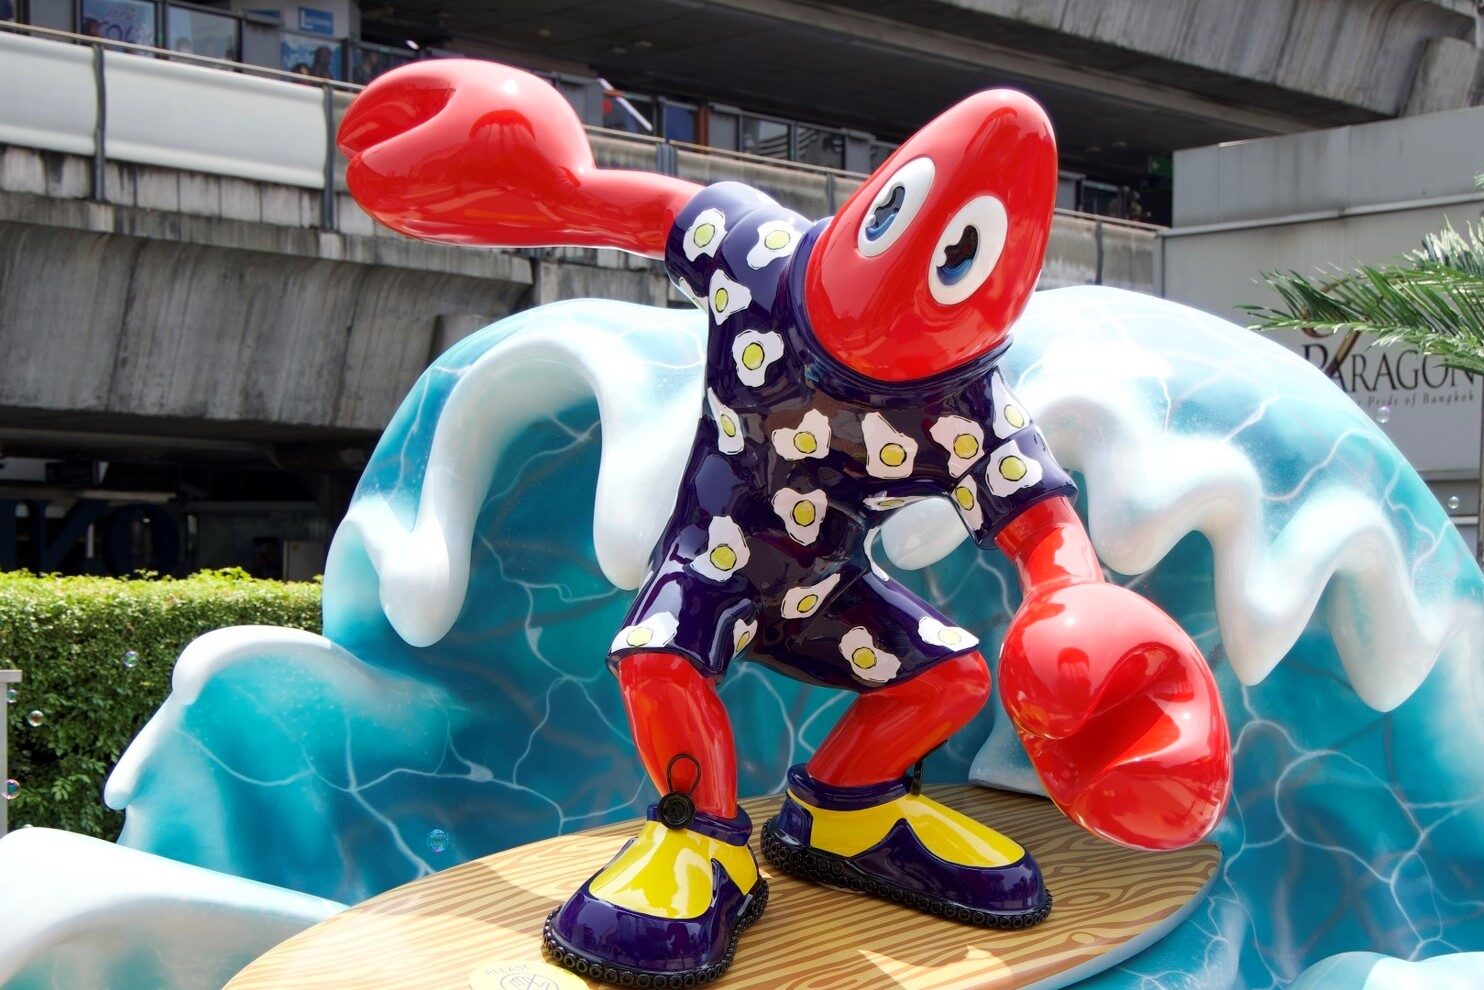 อPhilip Colbert ศิลปินระดับโลก ยกทัพโชว์ล็อบสเตอร์สุดจี๊ด ใน “Songkran Lobster Wonderland” 9-16 เม.ย. นี้ ที่พารากอน 